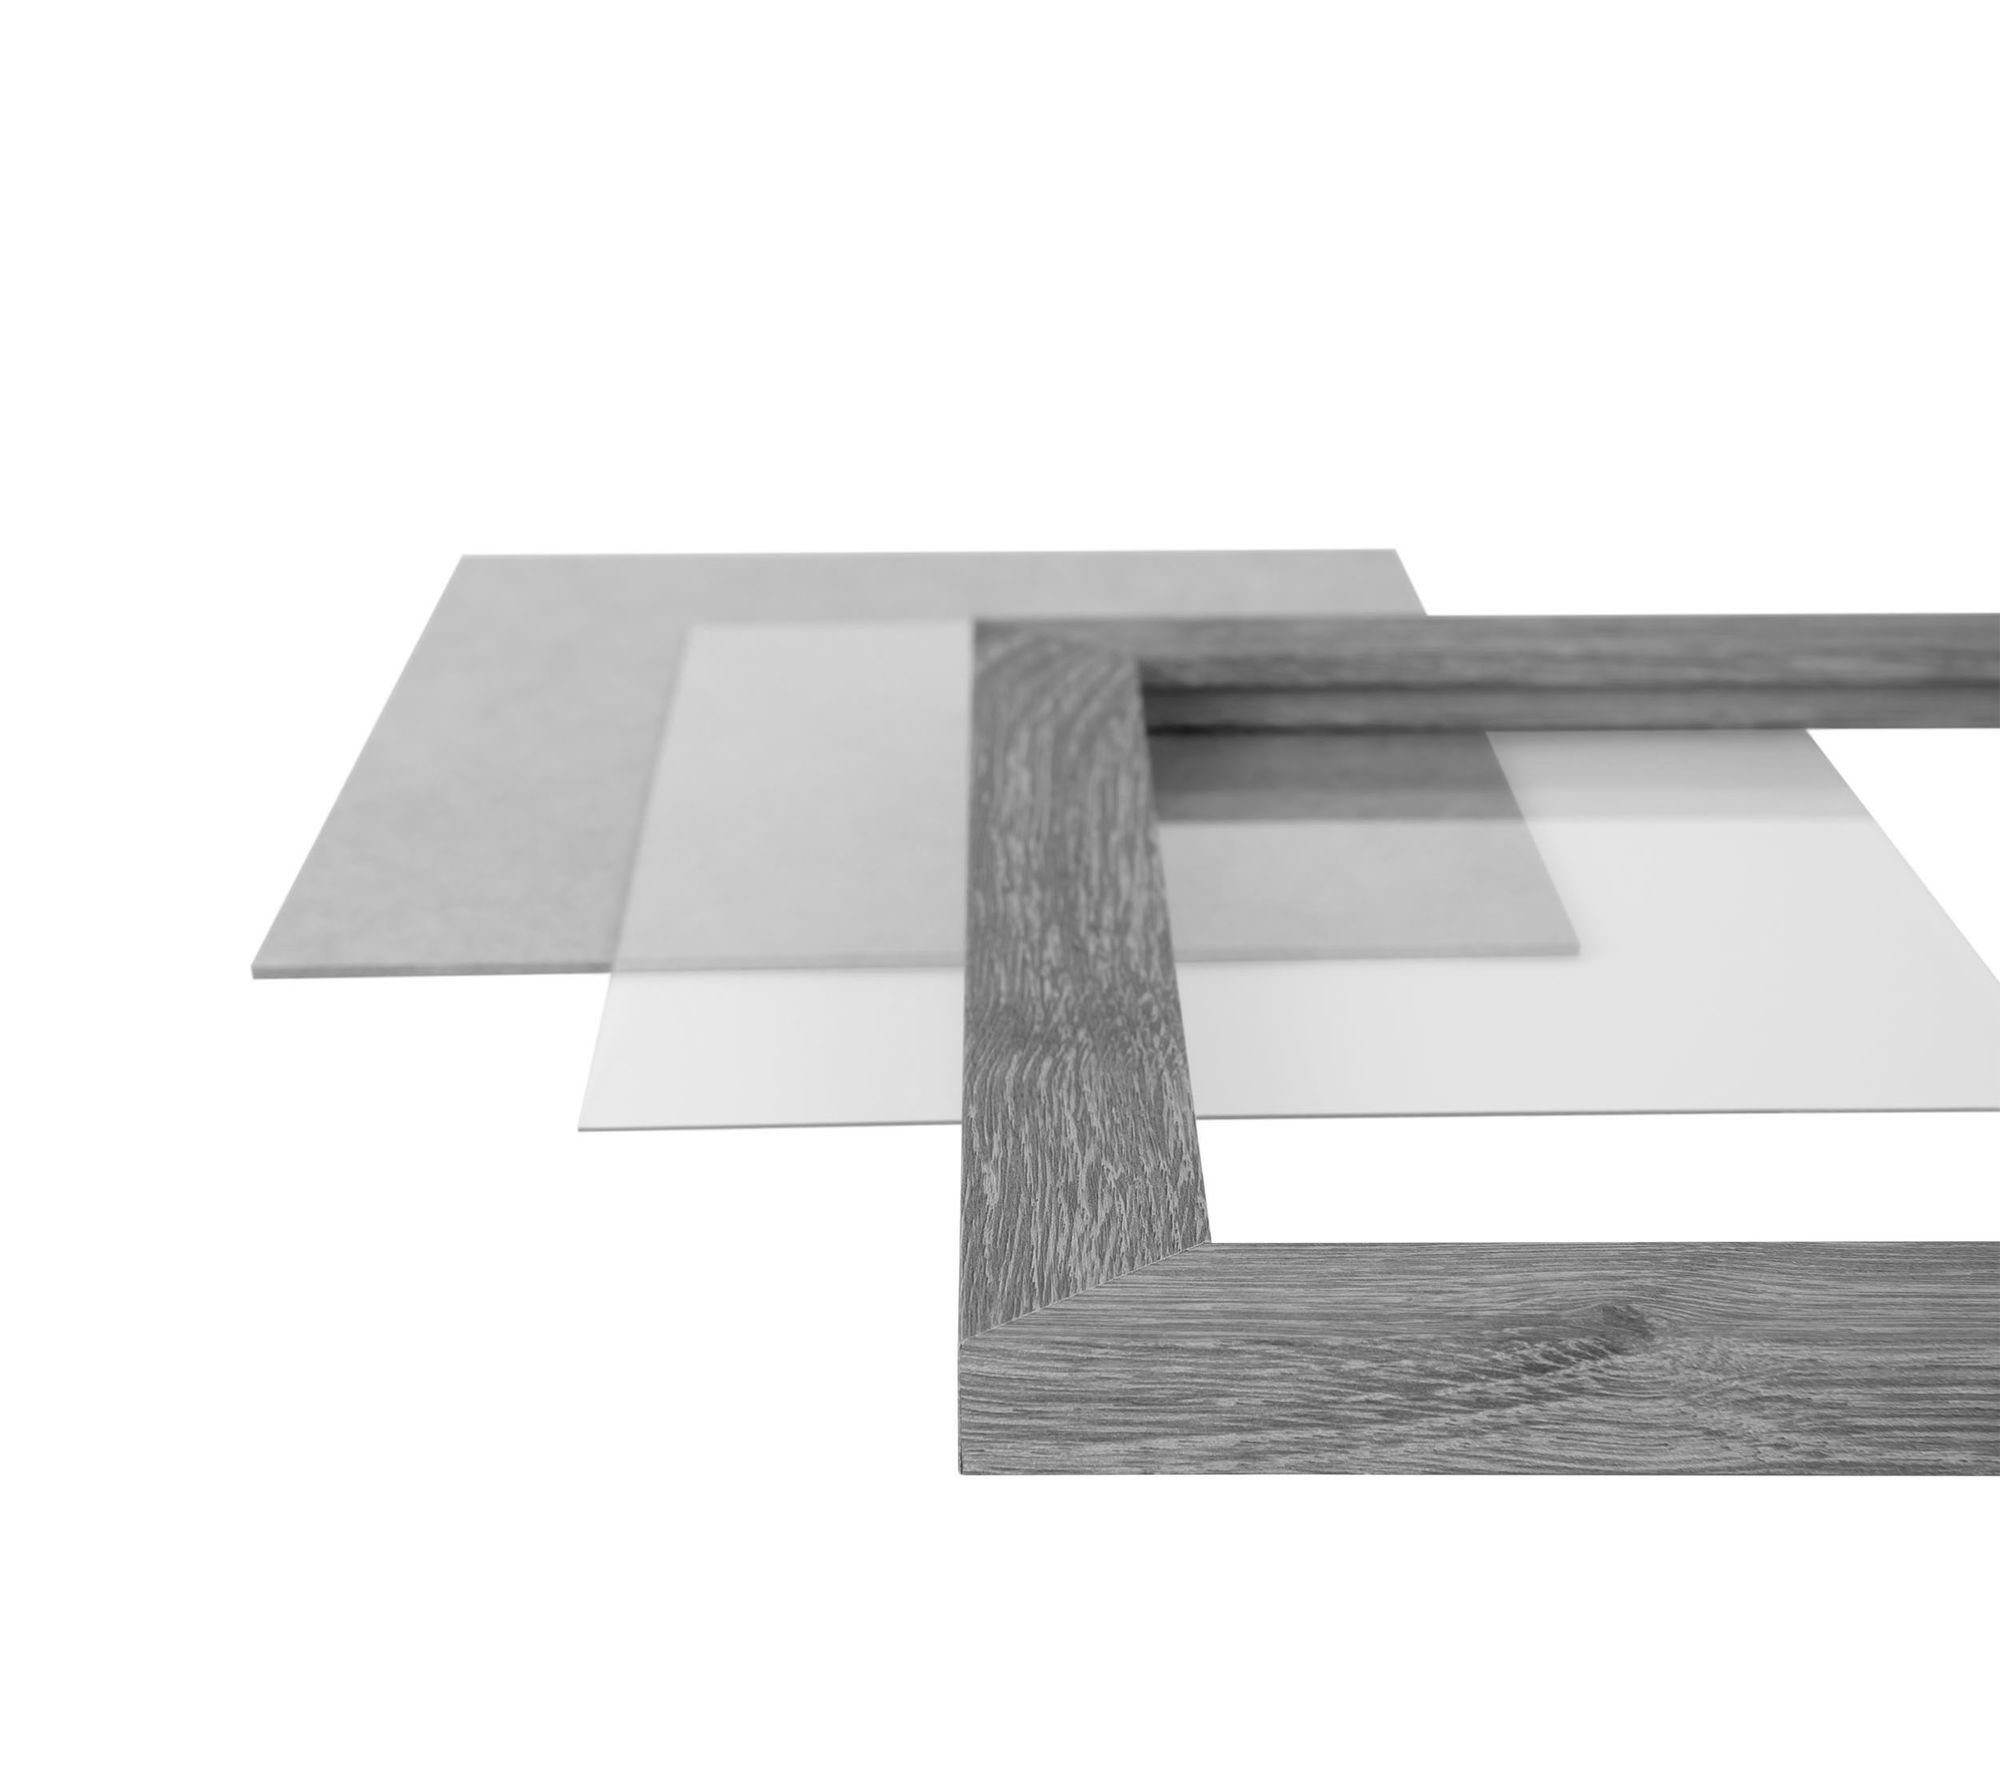 Moderner eckiger Aufhänger Holz Clamaro inkl. 61x92 und eiche handgefertigt Maß sonama in Rahmen nach Acrylglas, 'Collage' CLAMARO MDF Bilderrahmen Bilderrahmen Rückwand FSC®